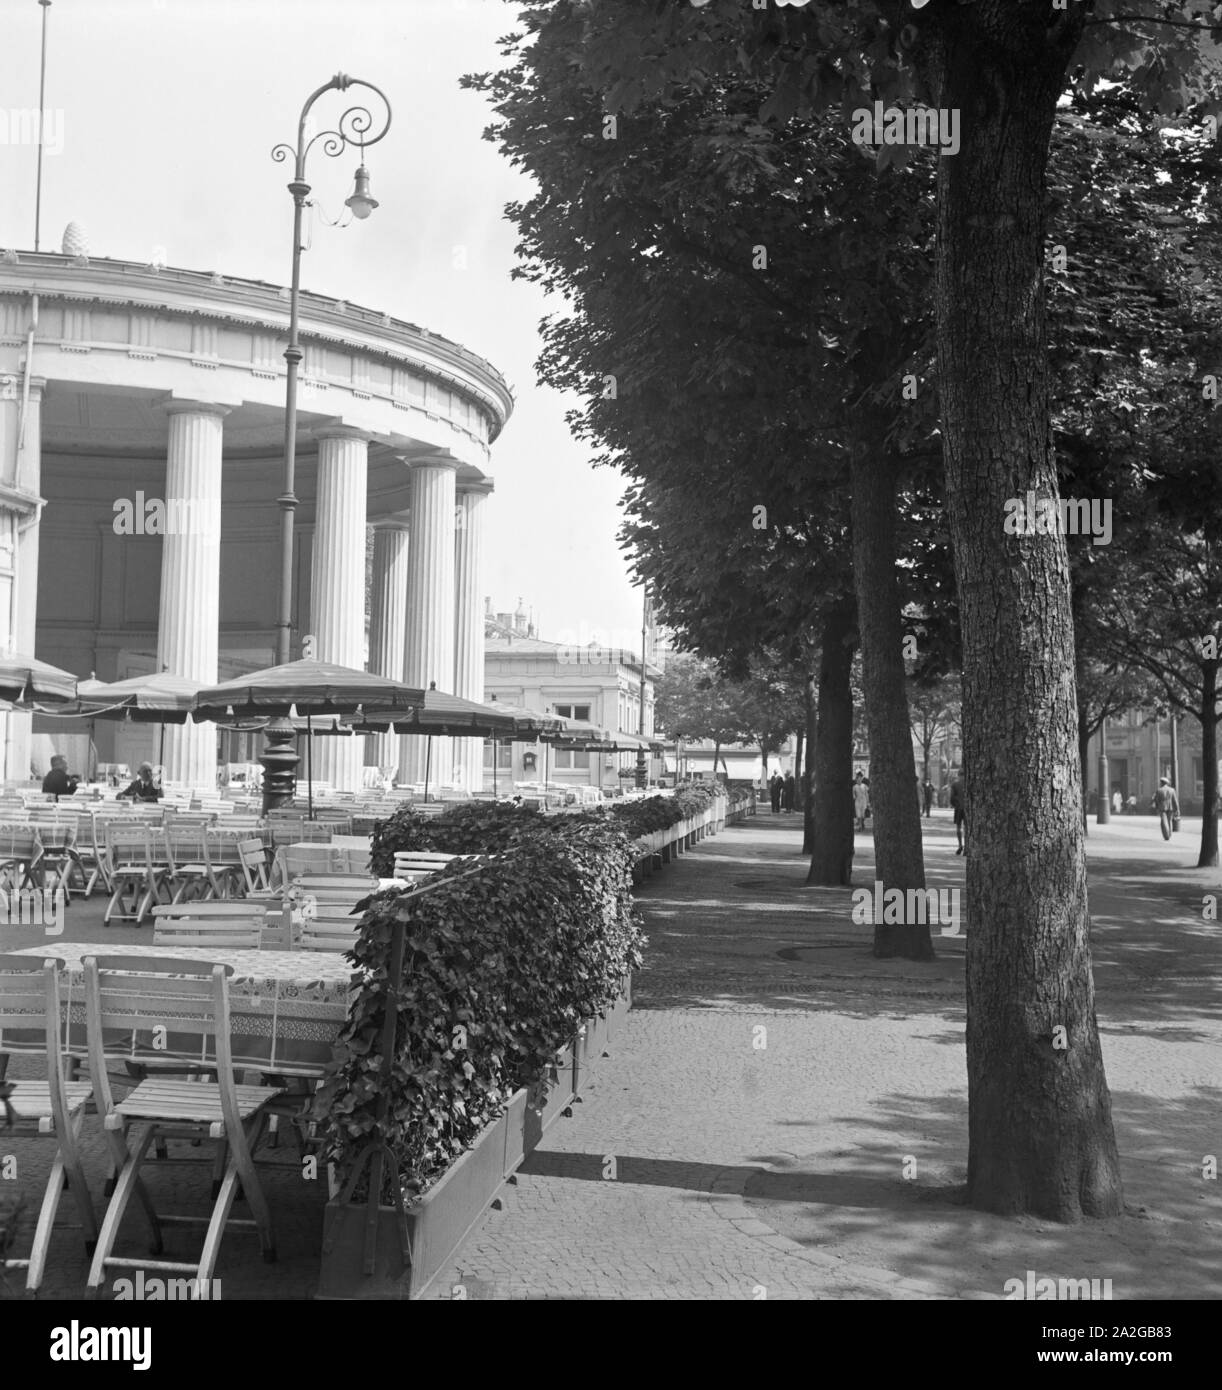 Elisenbrunnen der à Aix-la-Chapelle, Deutschland 1930 er Jahre. Spa à fontaine Elisenbrunnen Aix-la-Chapelle, Allemagne 1930. Banque D'Images